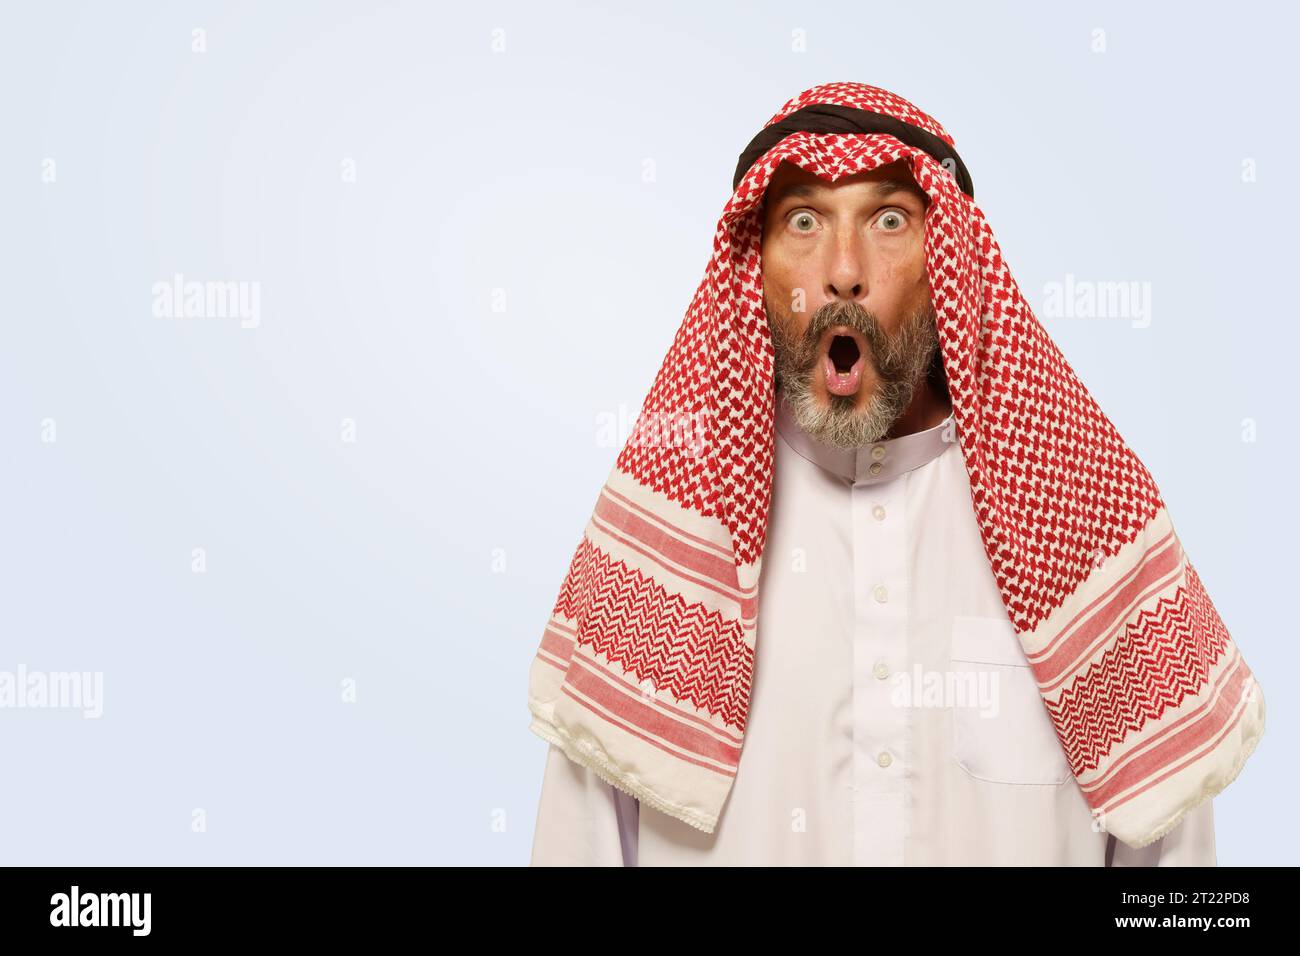 Der arabische Mann zeigt in keffiyeh einen Ausdruck mit Schock, Überraschung und Frustration, der sich durch den geöffneten Mund widerspiegelt. Er isolierte auf sanftem hellblauem Hintergrund und veranschaulichte die kulturelle Identität der ethnischen Gruppe. Hochwertige Fotos Stockfoto